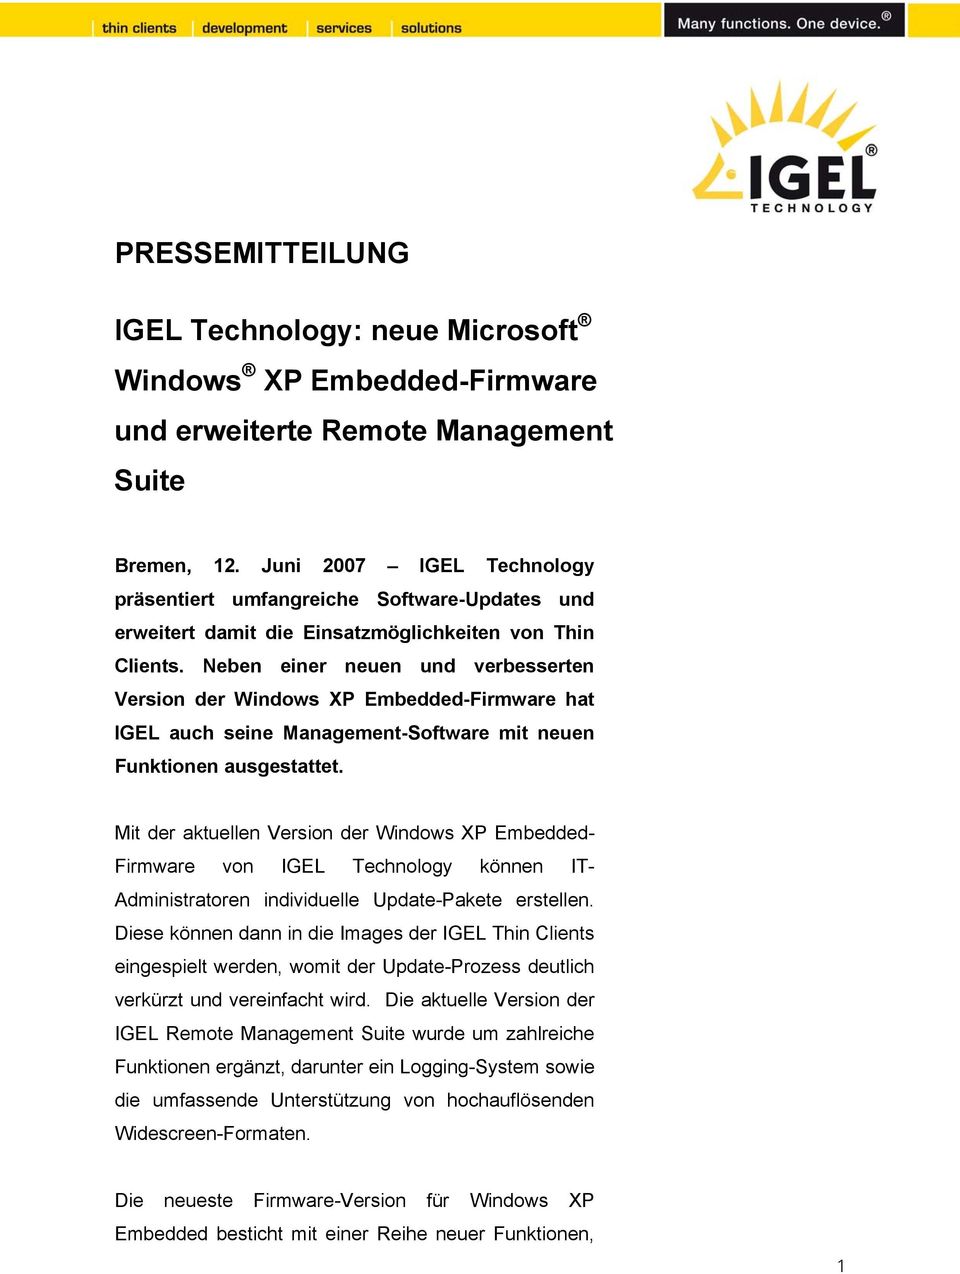 Neben einer neuen und verbesserten Version der Windows XP Embedded-Firmware hat IGEL auch seine Management-Software mit neuen Funktionen ausgestattet.